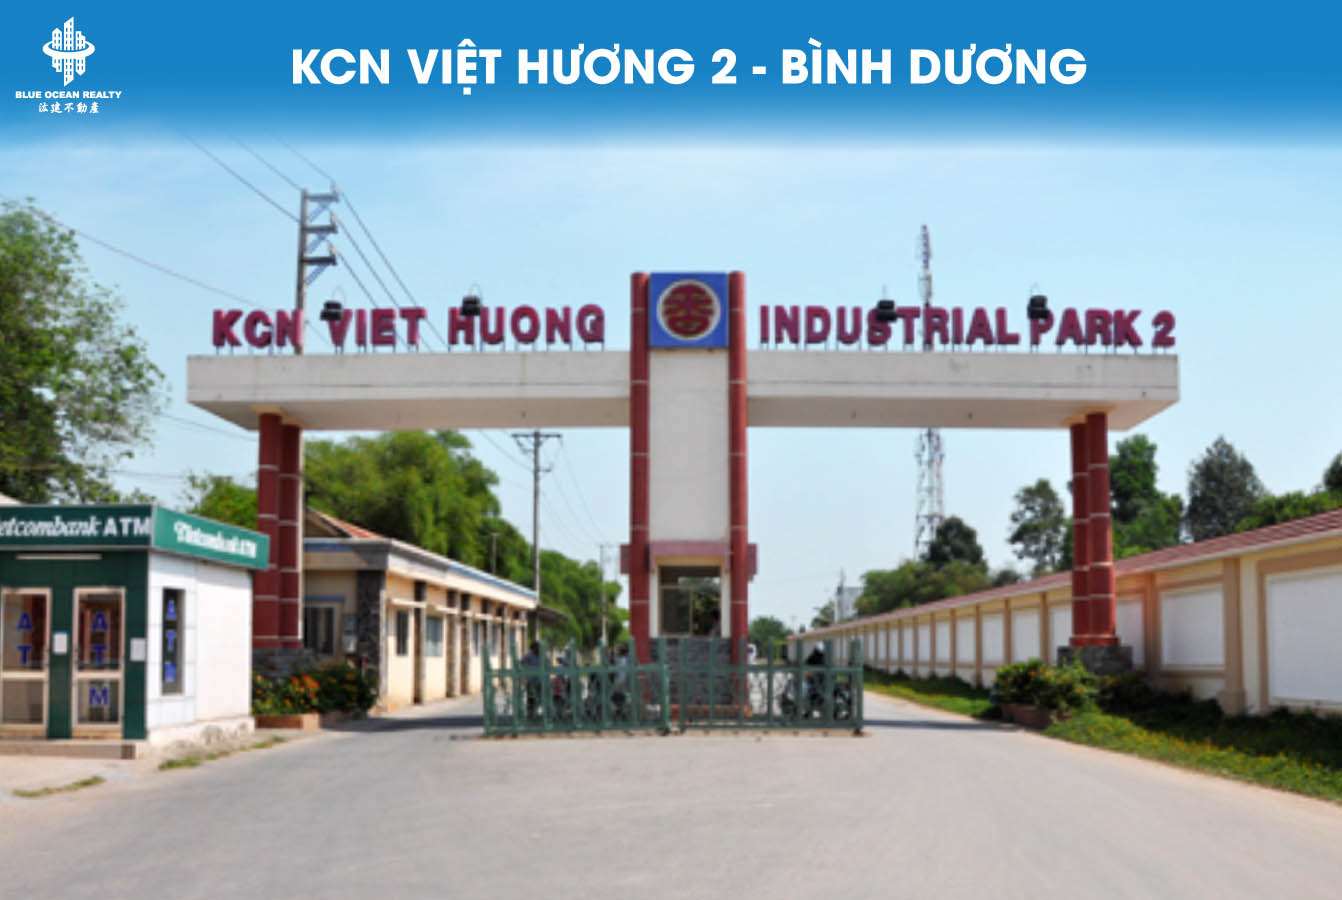 Khu công nghiệp Việt Hương 2 - Bình Dương